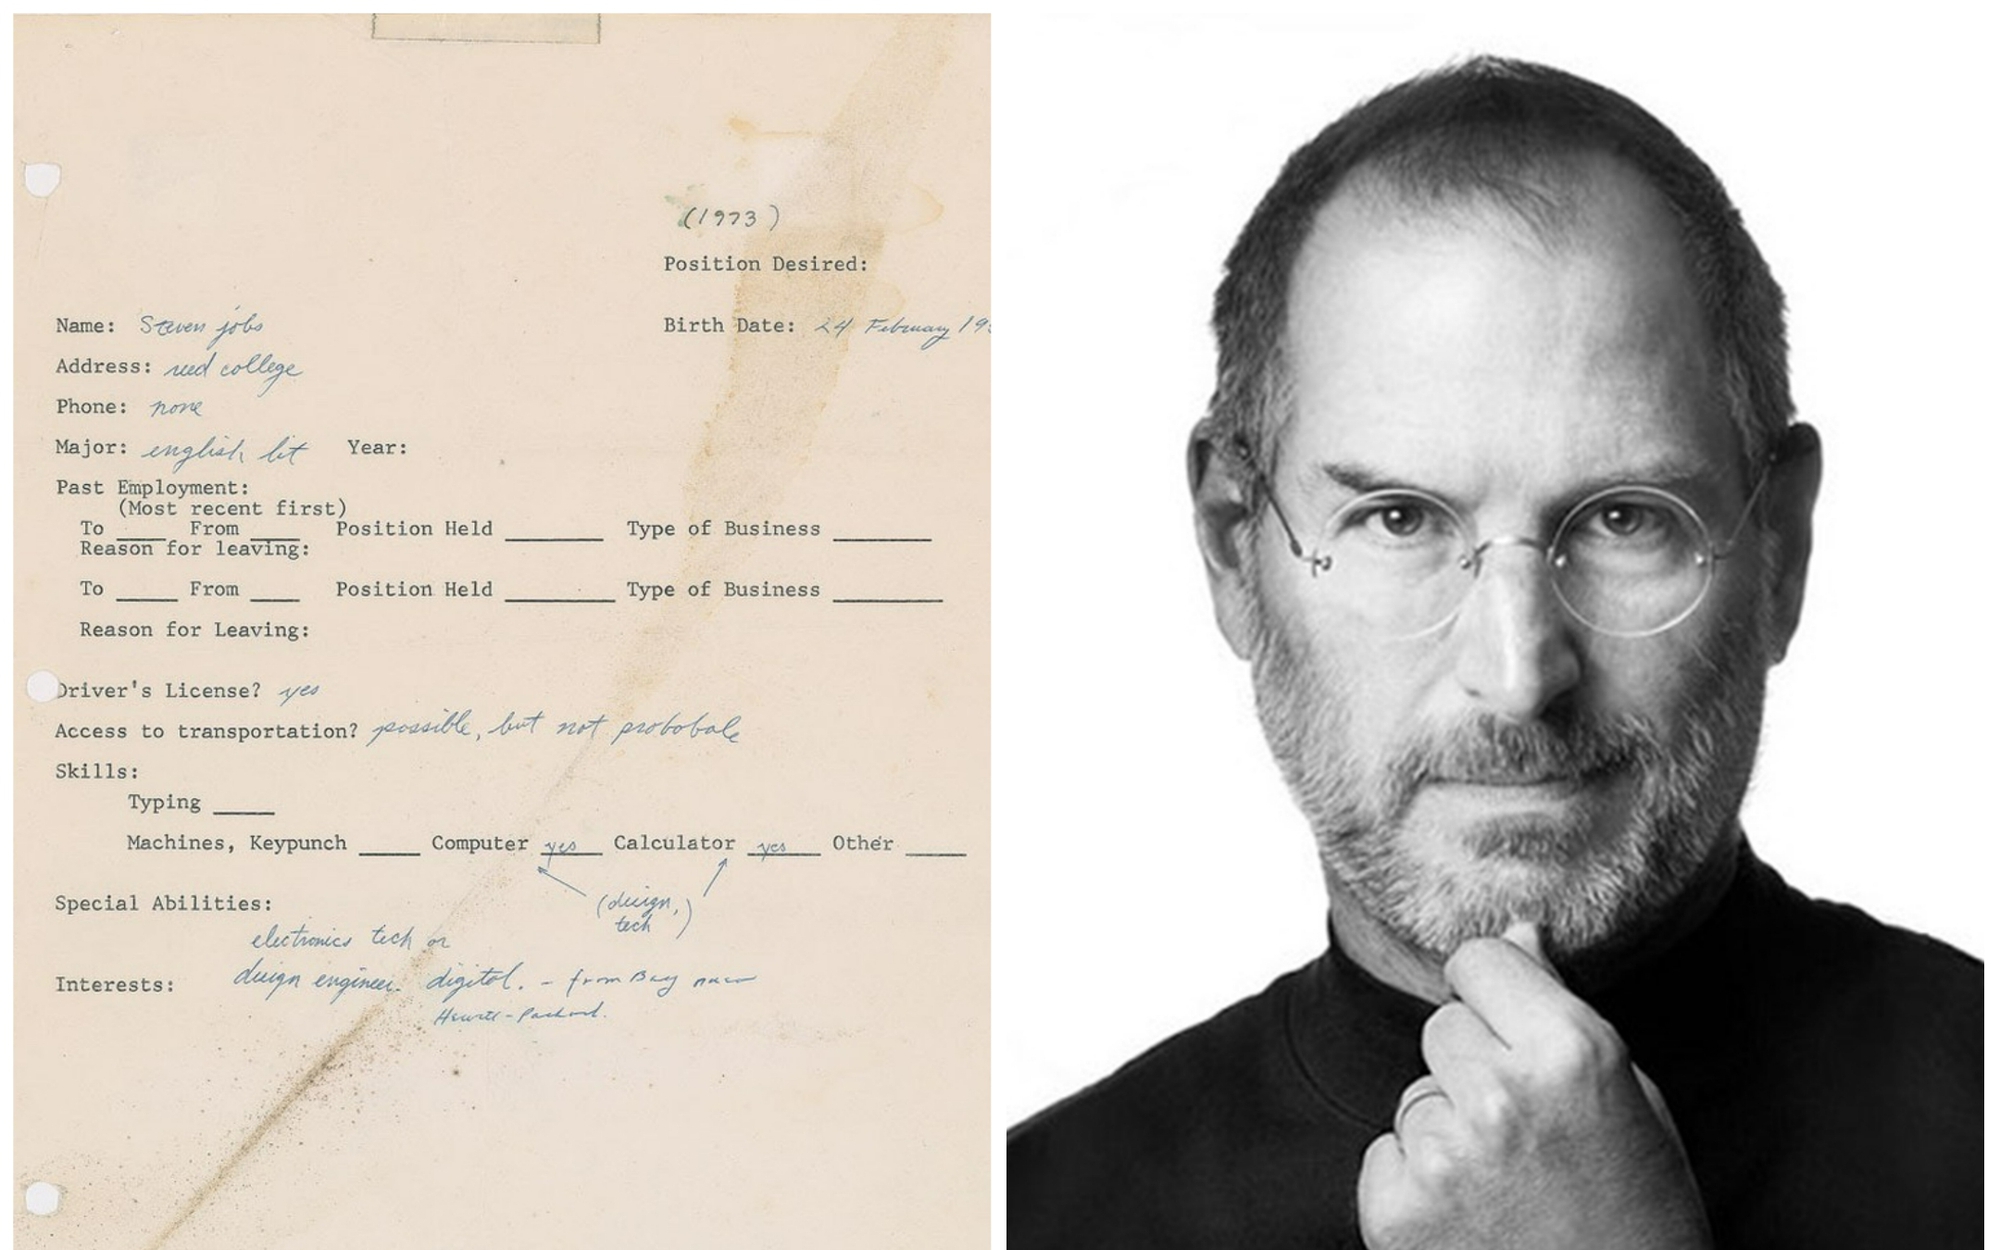 Đơn xin việc từ năm 1973 của Steve Jobs hé lộ lý do tại sao ông lại có thể trở thành tỷ phú công nghệ đình đám thế giới